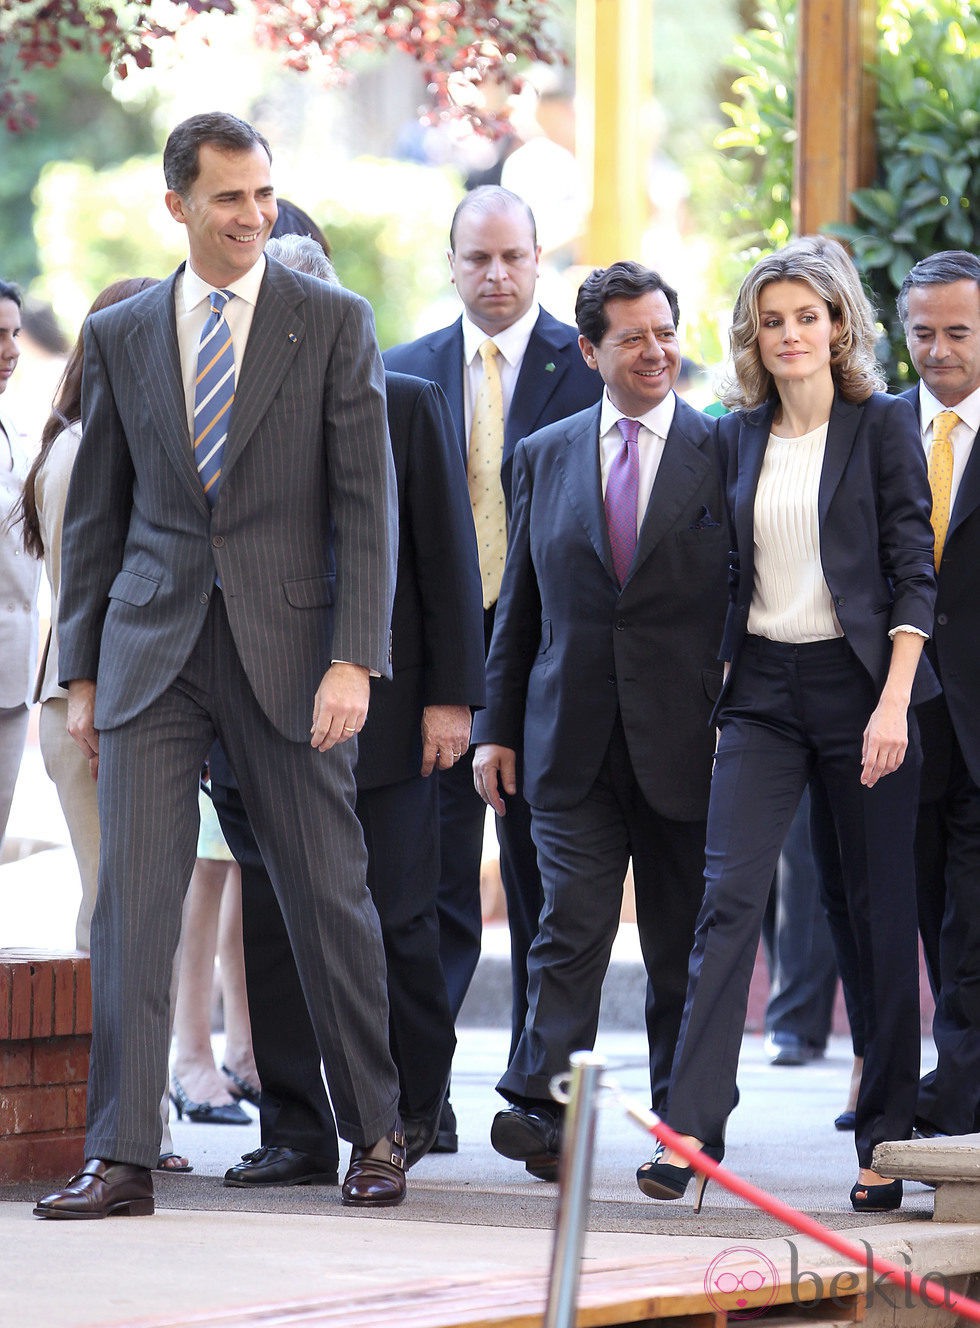 Los Príncipes de Asturias se reúnen con la colonia de españoles en Chile